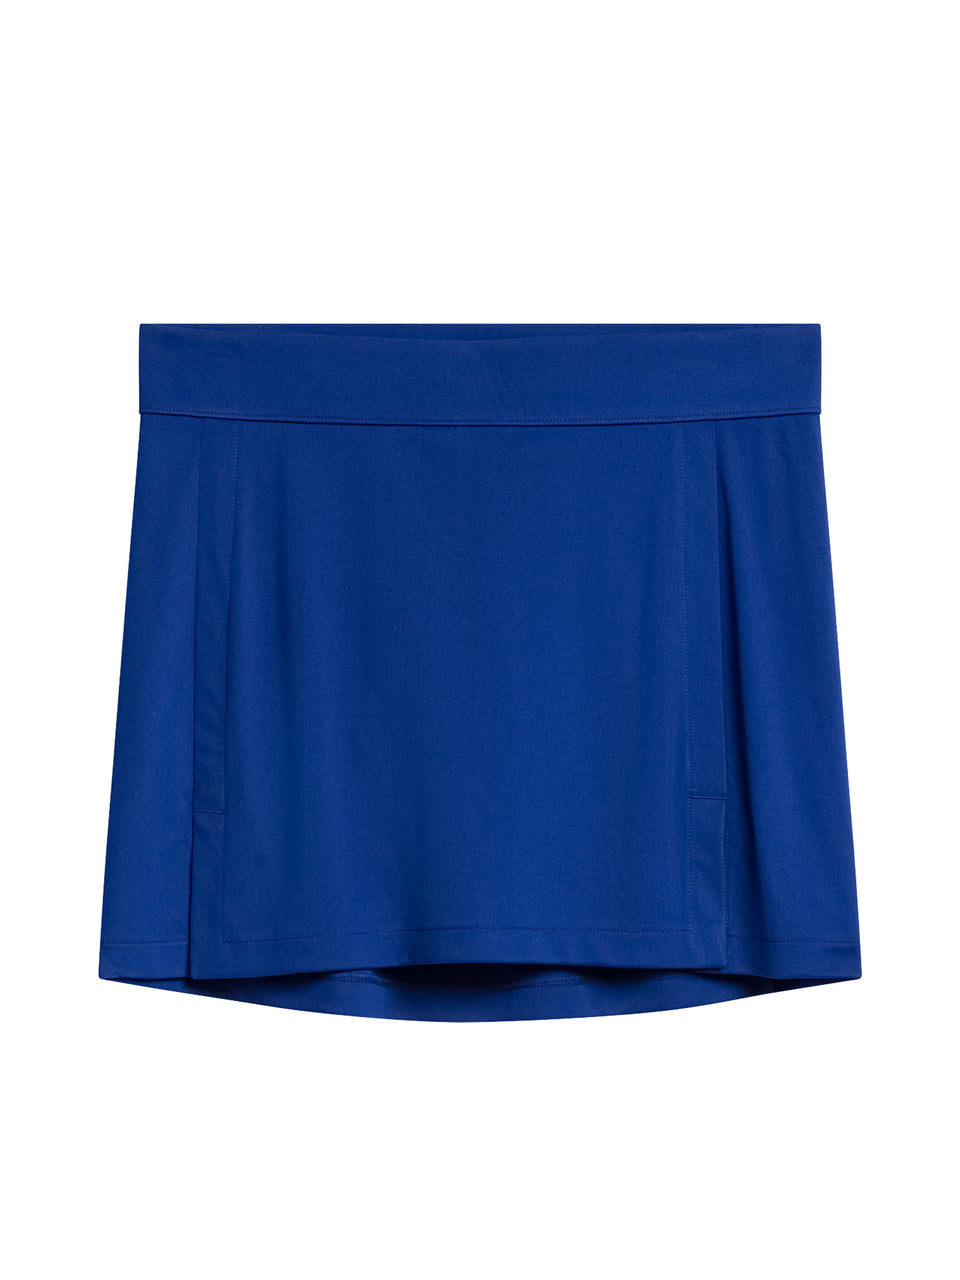 Amelie Skirt / Sodalite Blue